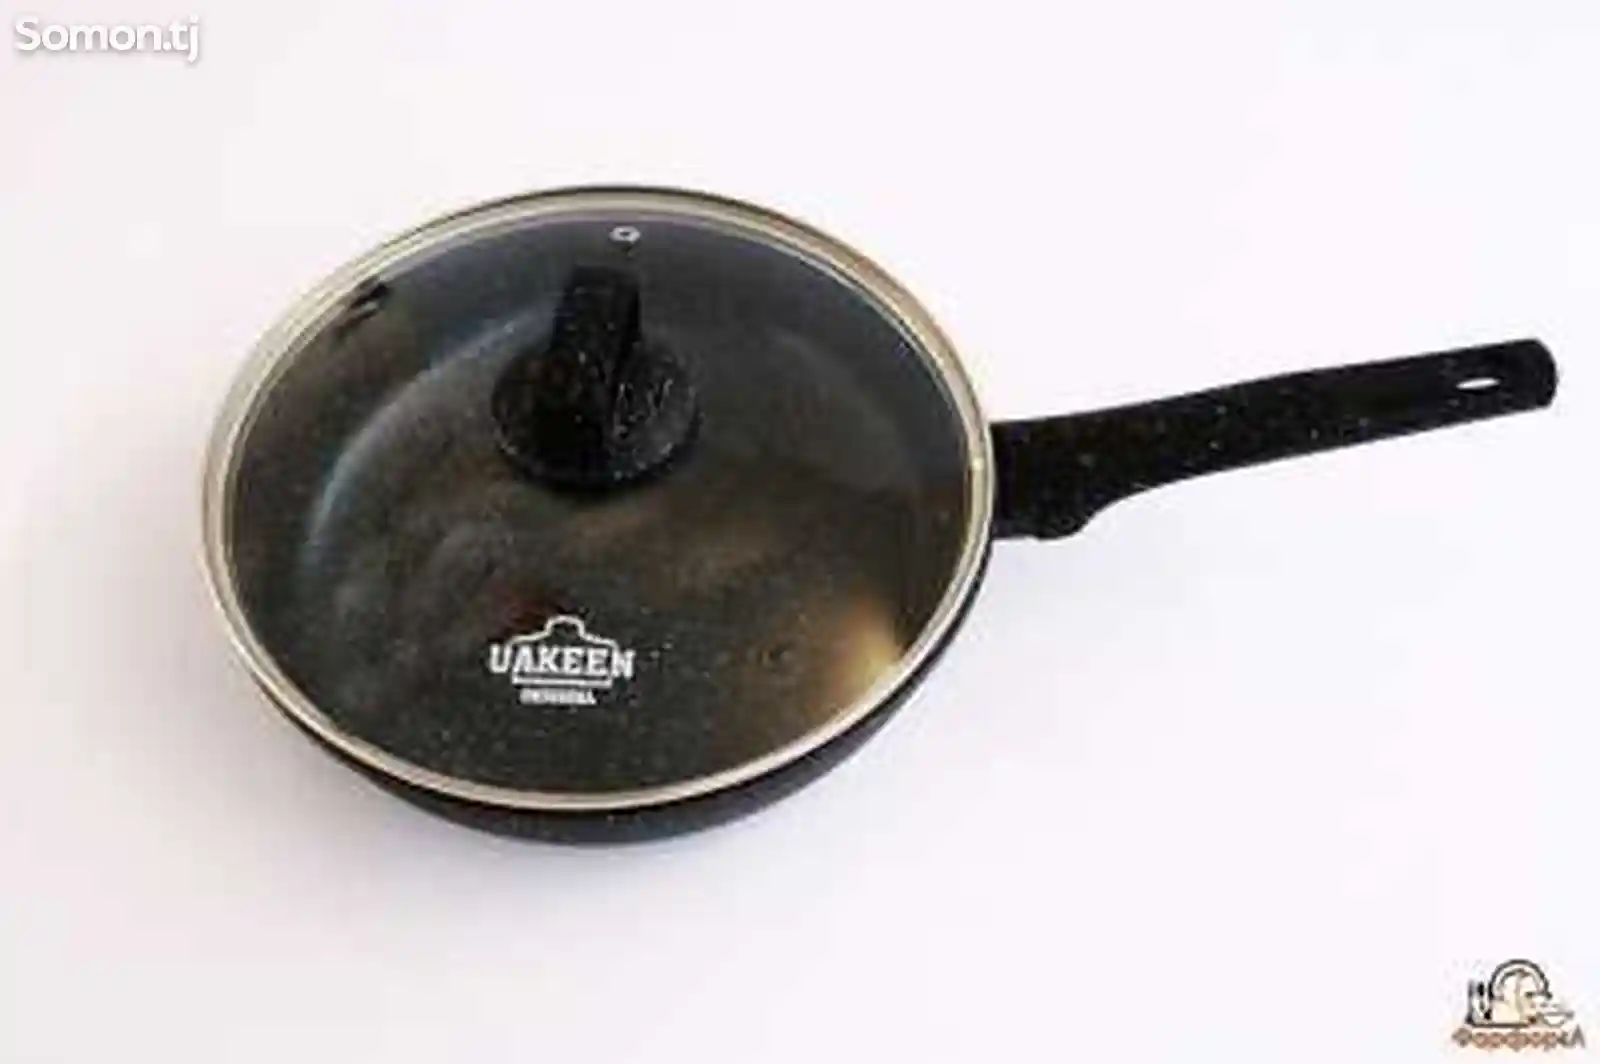 Сковородка Uakeen-1